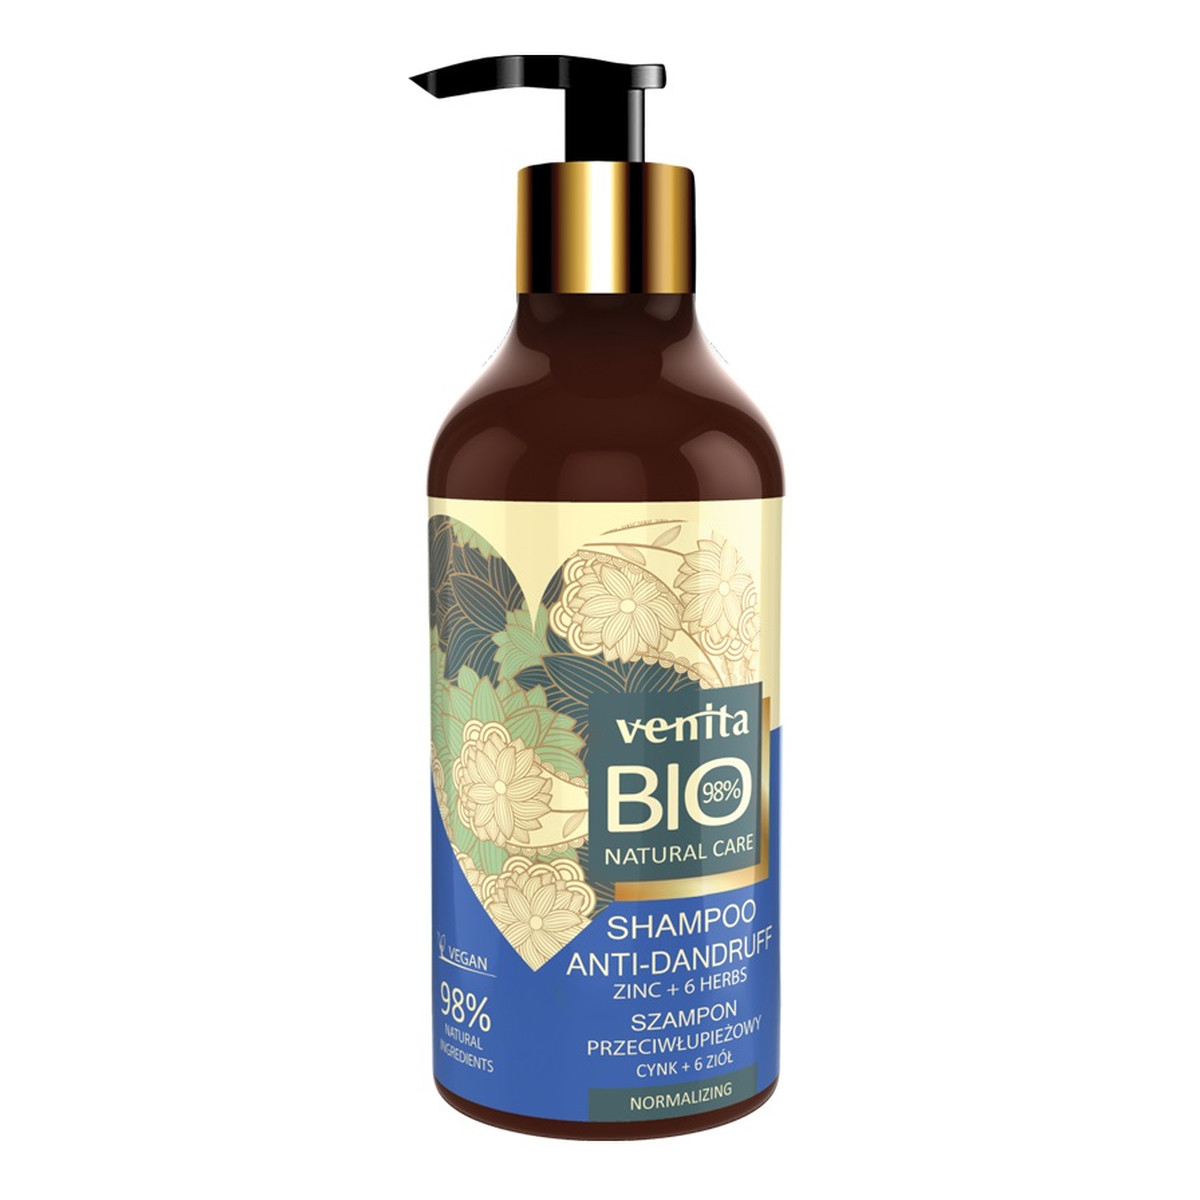 Venita Bio Natural Care anti-dandruff shampoo szampon przeciwłupieżowy do włosów cynk + 6 ziół